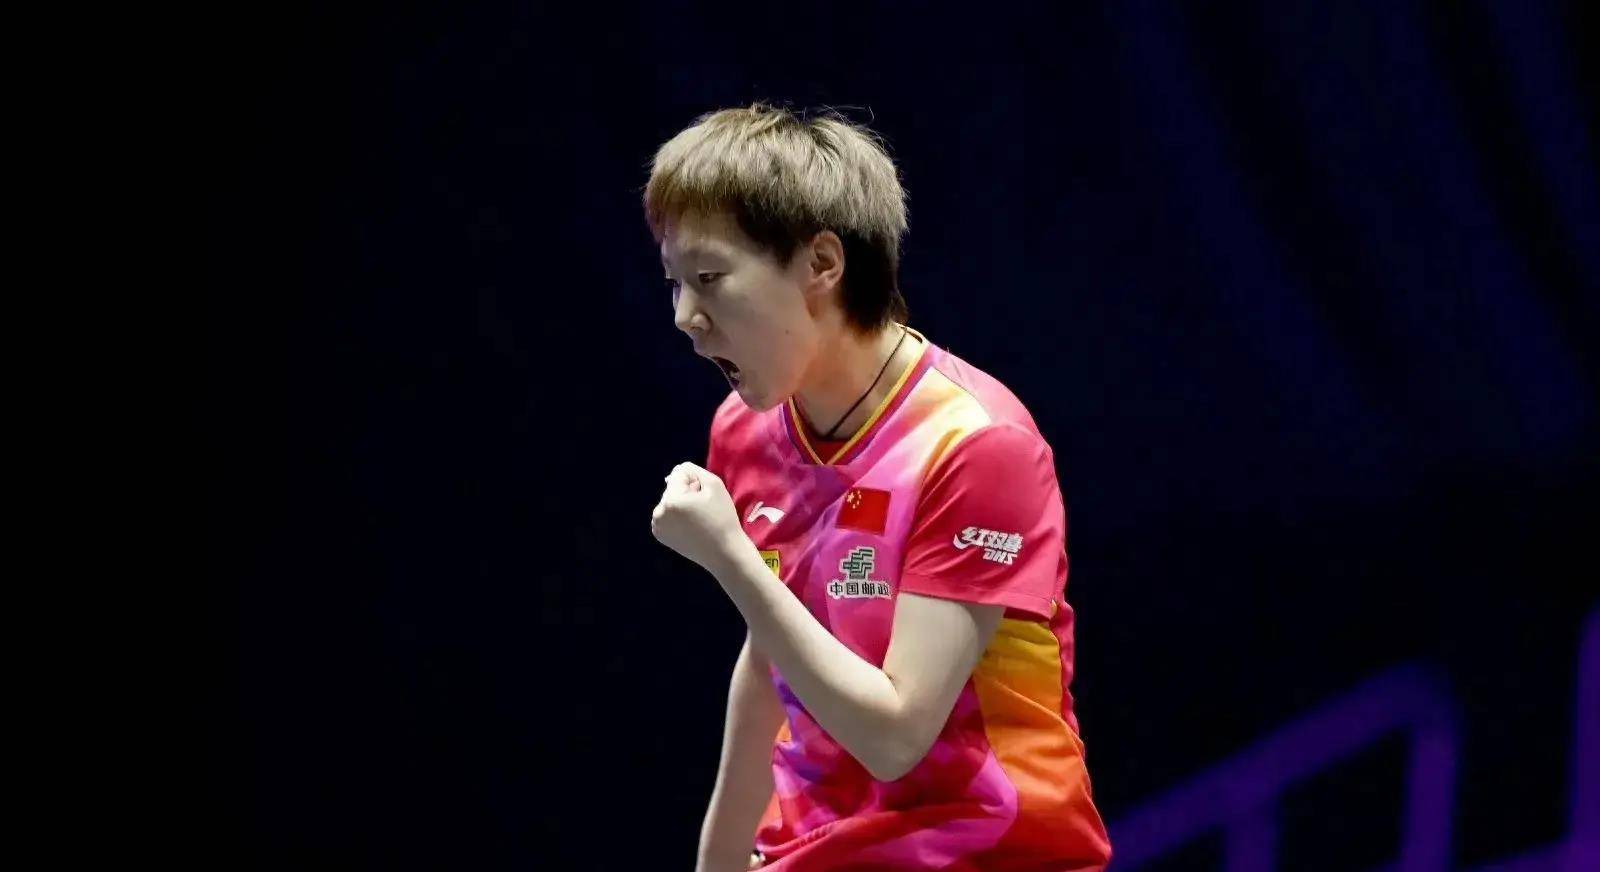 王曼昱强势晋级第二轮,大满贯女单冠军余威仍延续